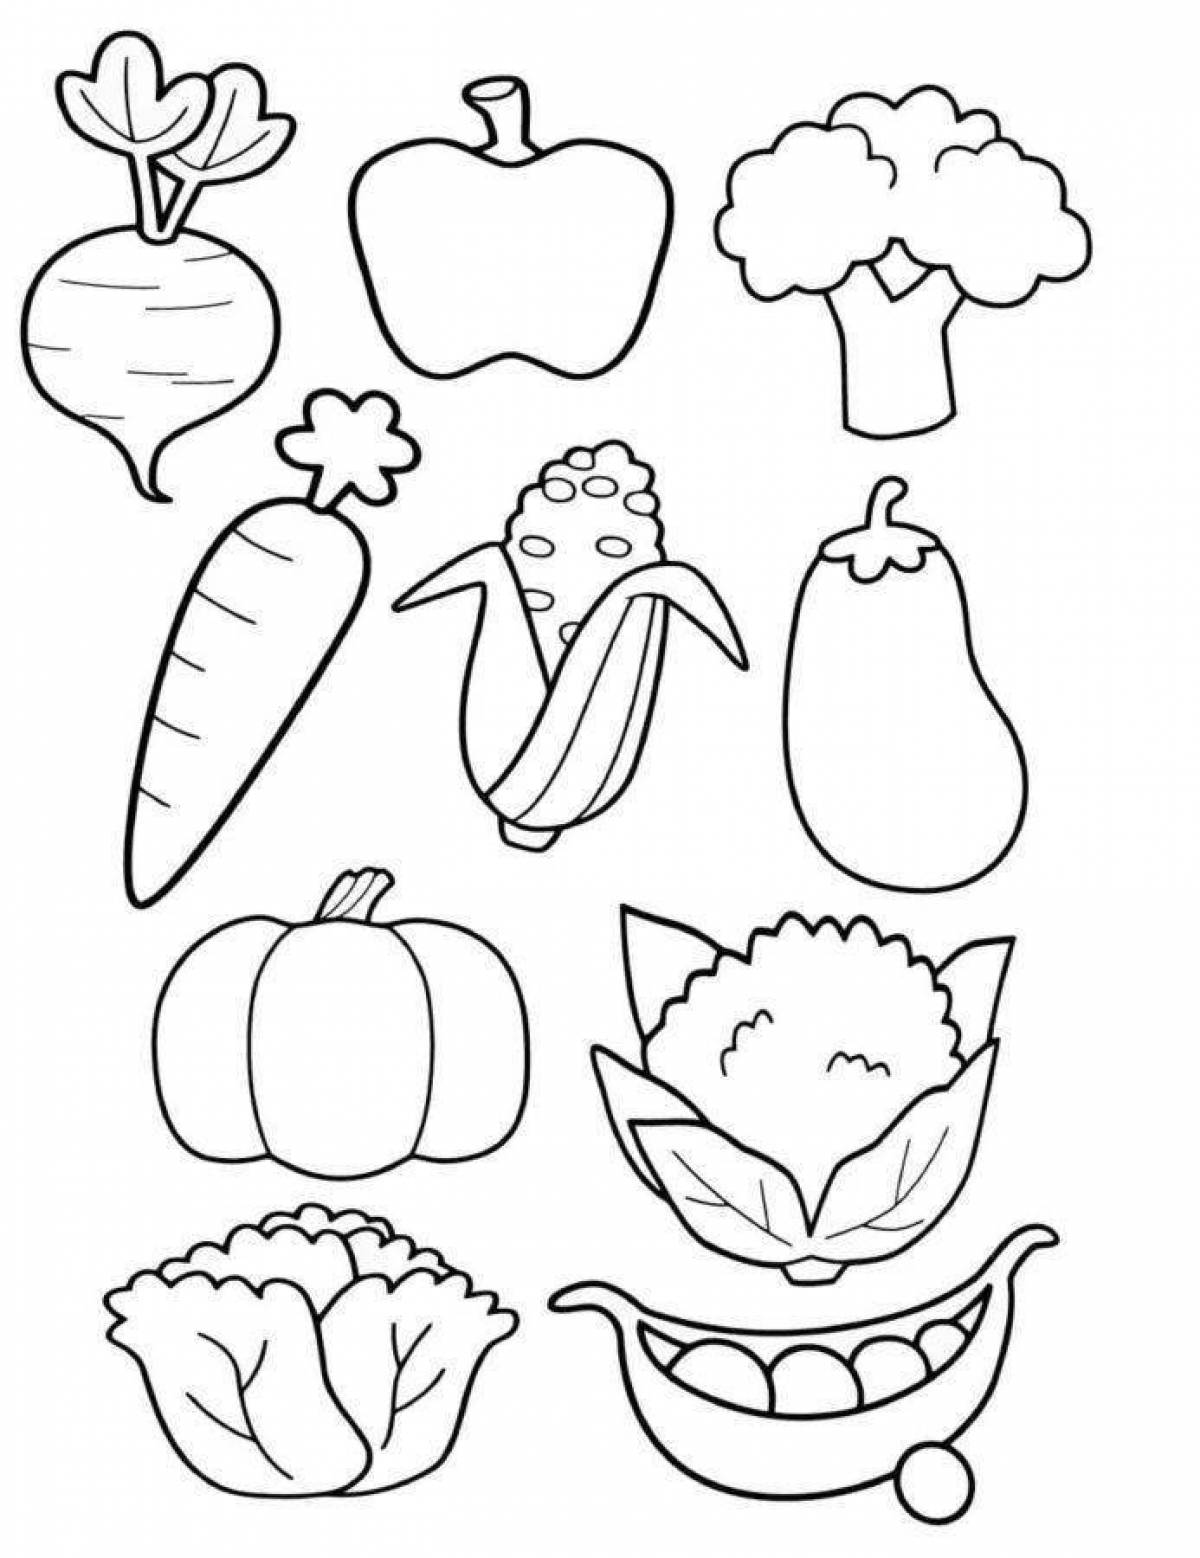 Изображения по запросу Здоровая пища рисунок - страница 2